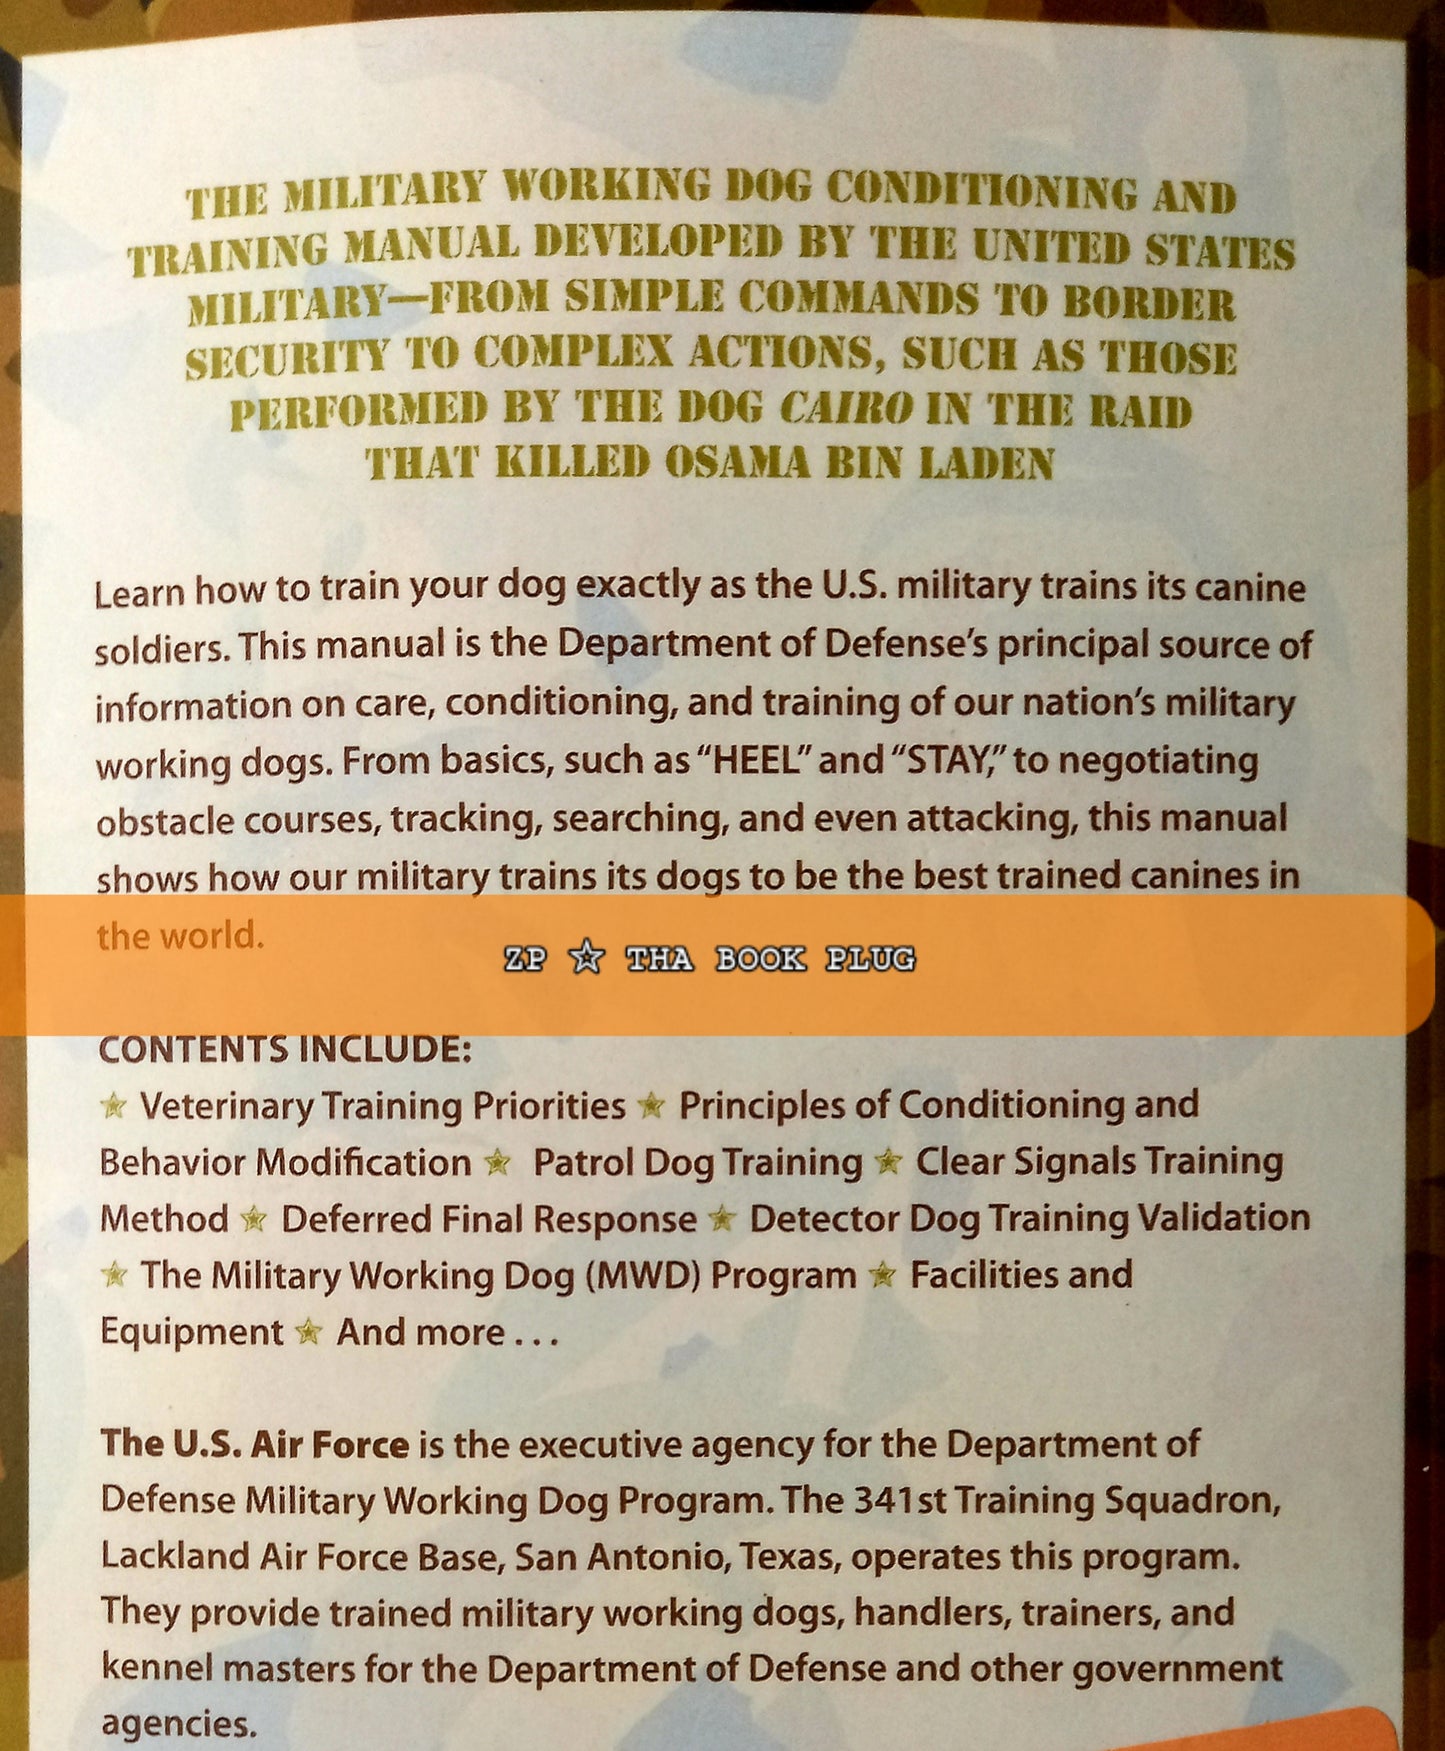 U.S. Military Working Dog Training Handbook